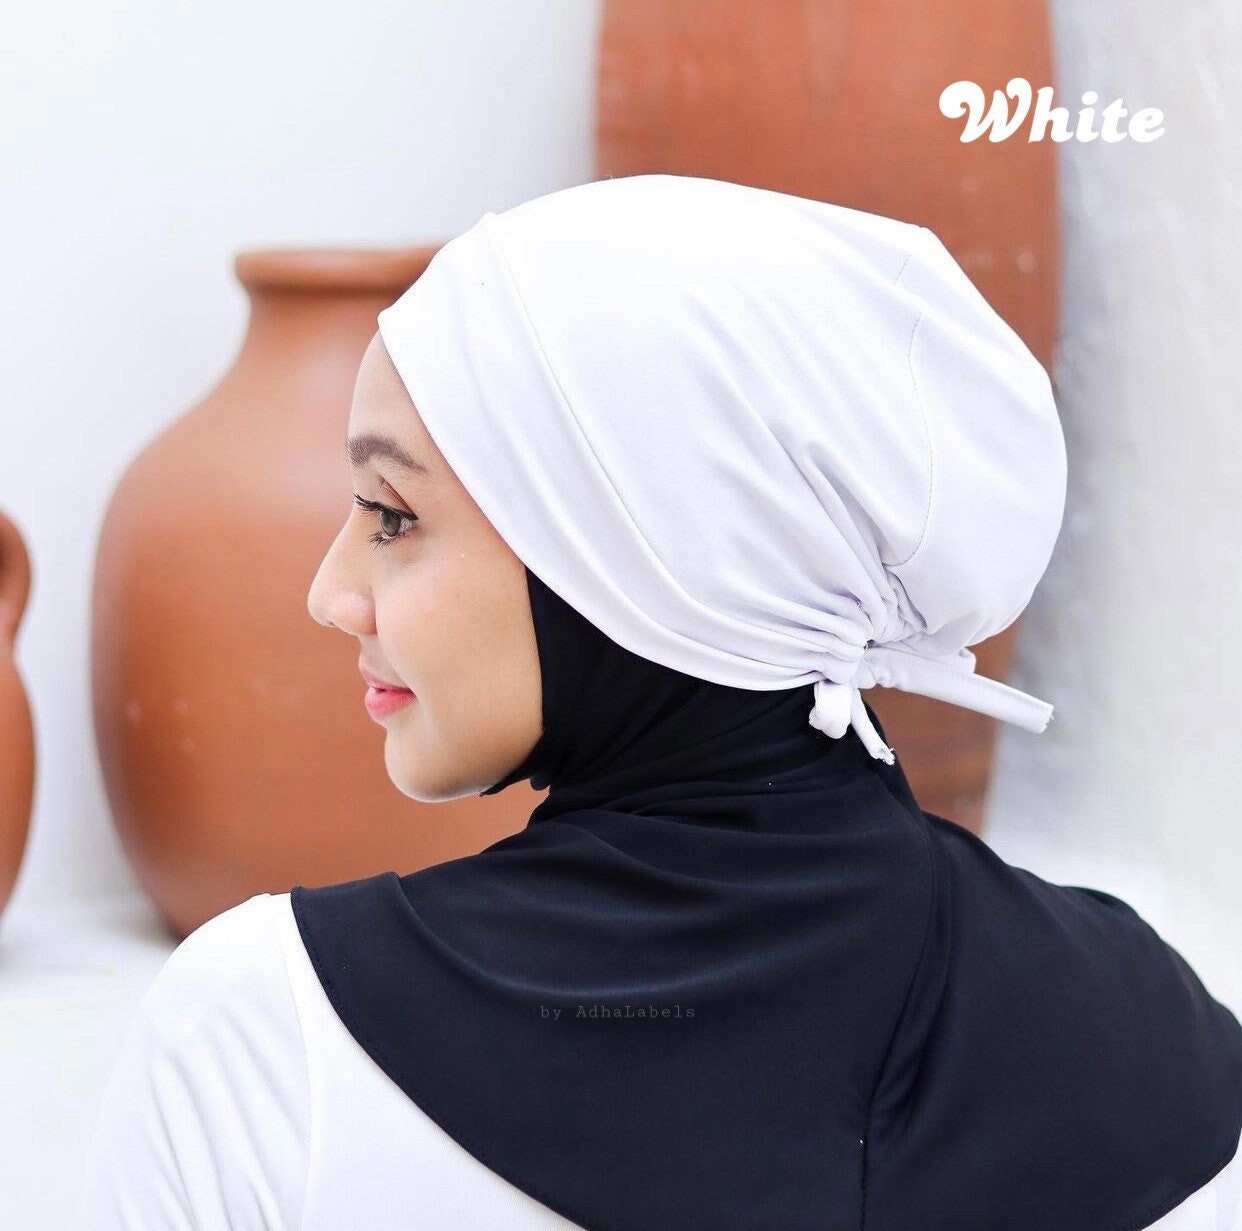 6 Pcs Hijab Scarf for Women Hijab UnderCap Hijab Cap Cote dIvoire